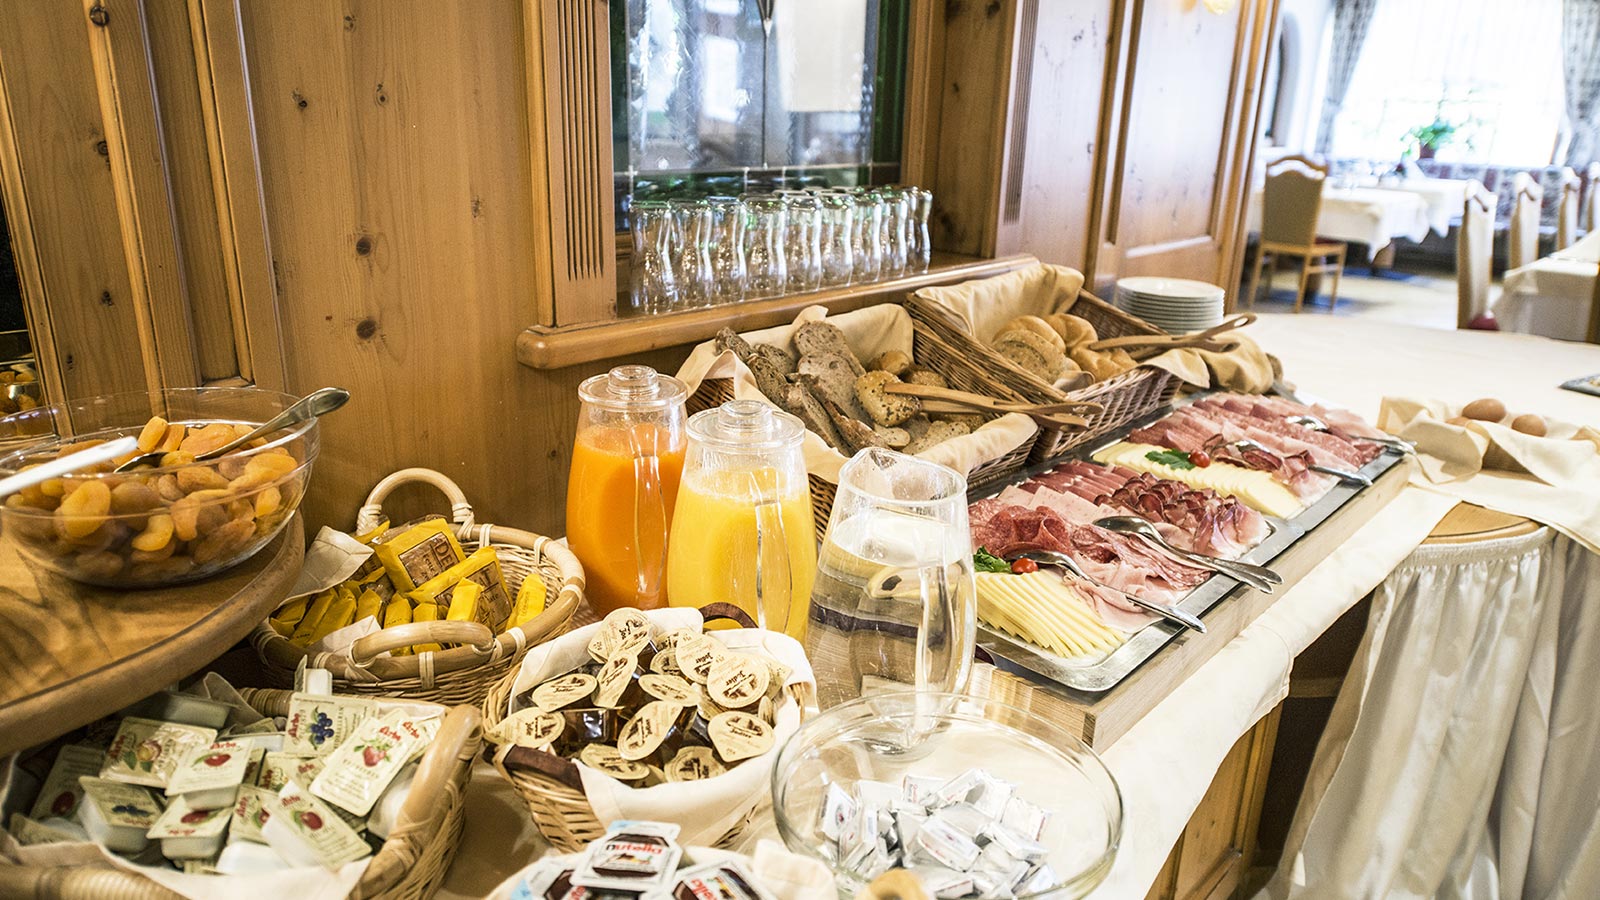 Umfangreiches Frühstücksbuffet mit verschiedenen Säften, Aufschnitt, Käse, Brot, Butter und Marmelade im Hotel in Gsies